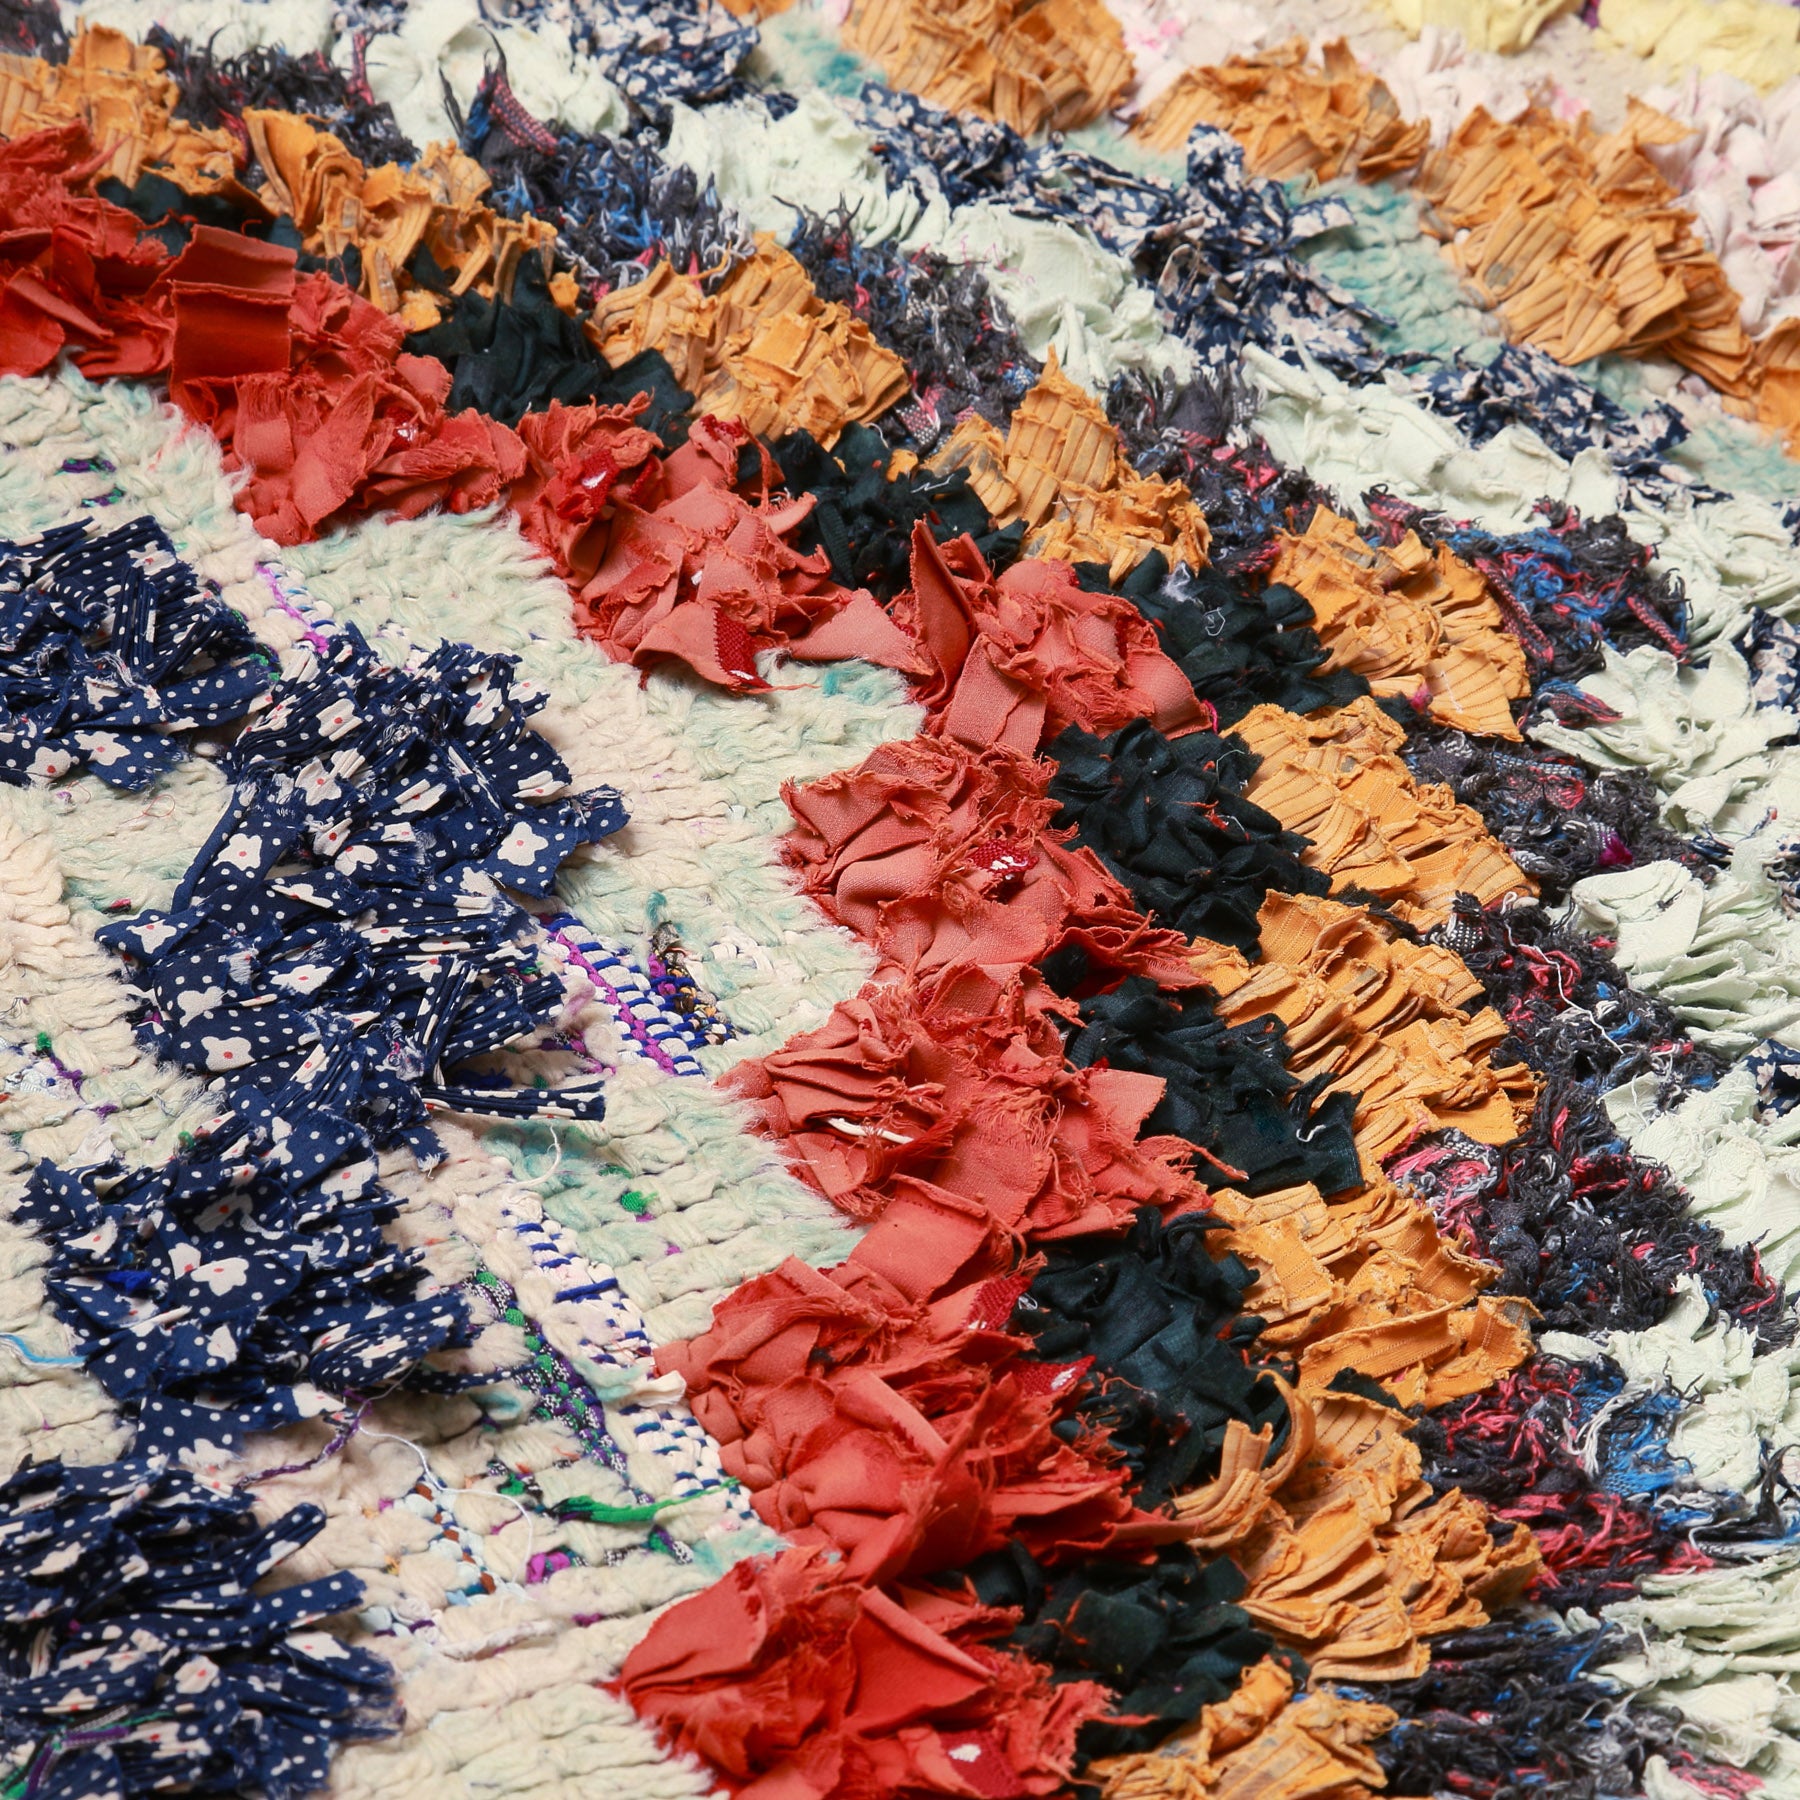 dettaglio dei quadrati colorati realizzati annodando vecchi tessuti e lana a creare delle frecce